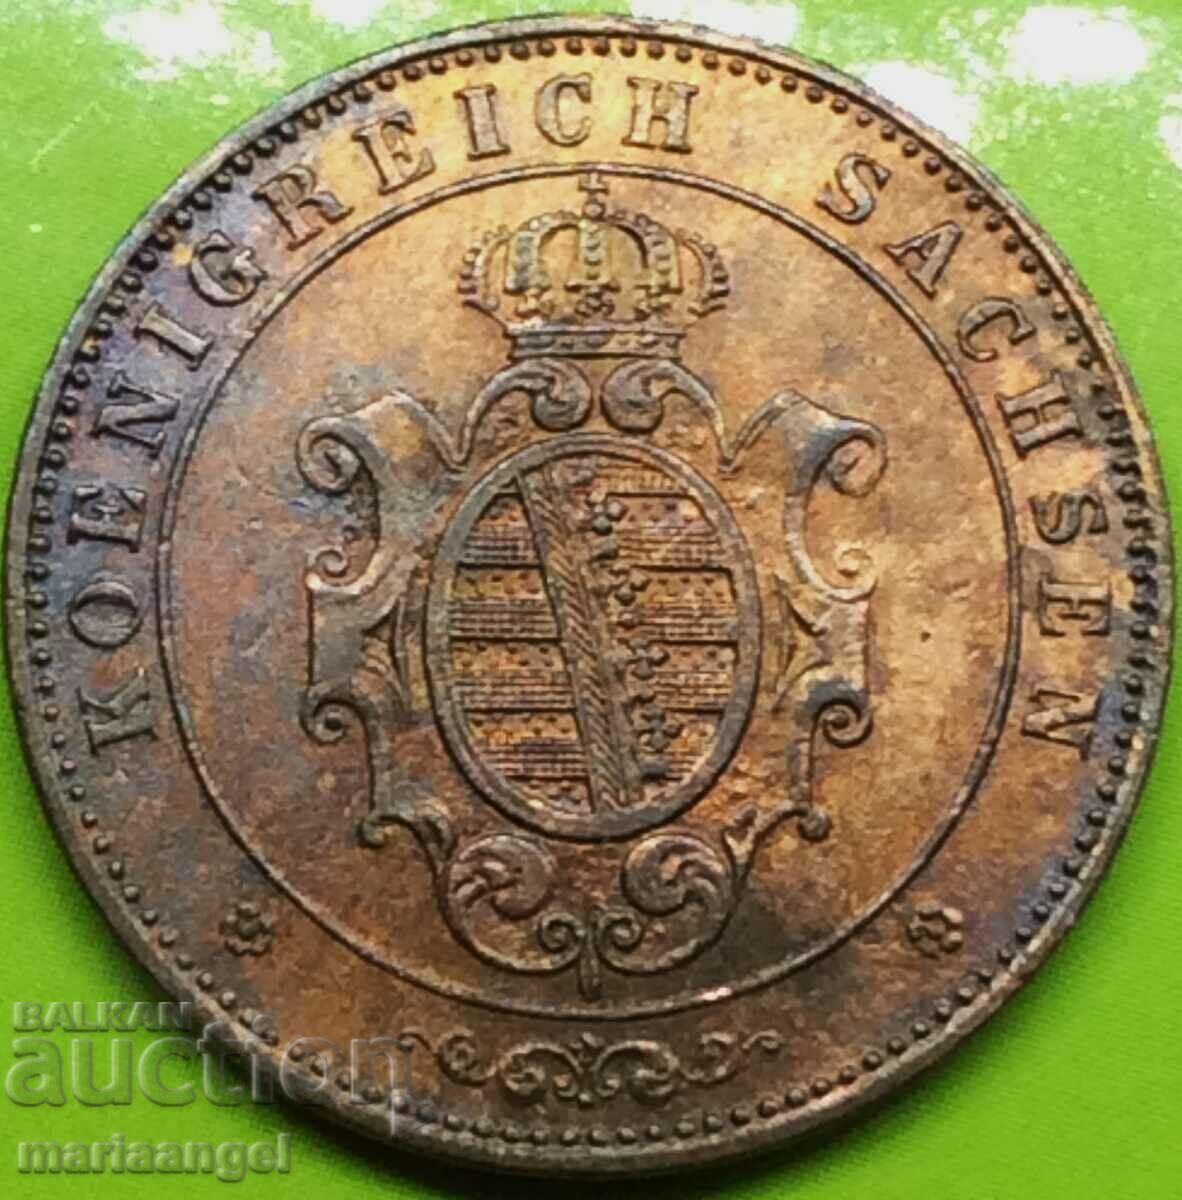 Saxony 5 pfennig 1862 χαλκός